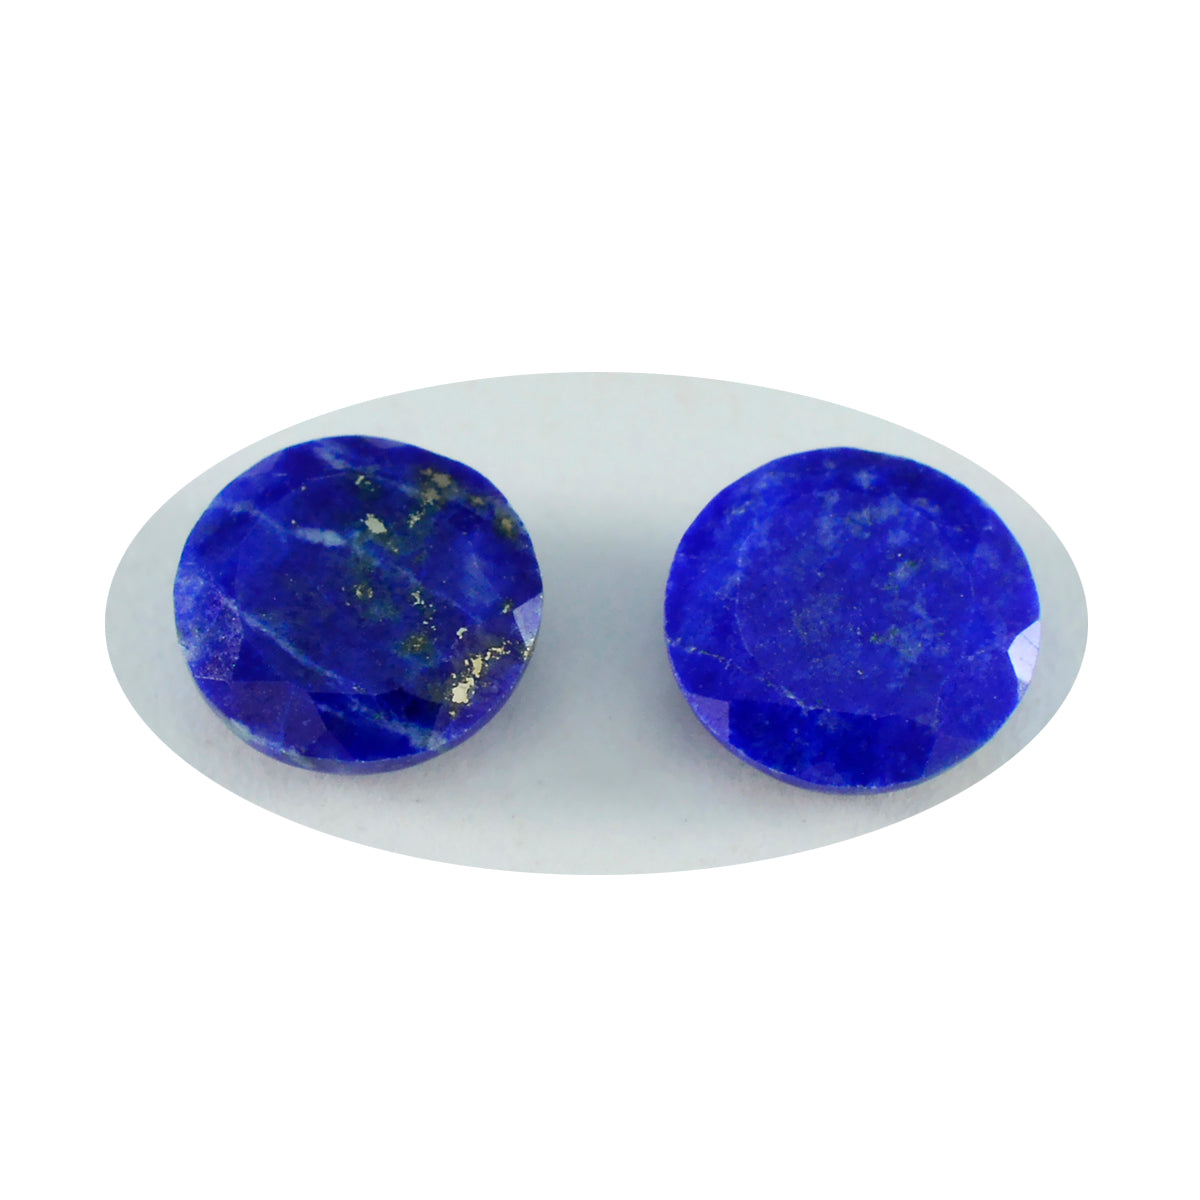 Riyogems 1 Stück echter blauer Lapislazuli, facettiert, 14 x 14 mm, runde Form, wunderschöner Qualitäts-Edelstein